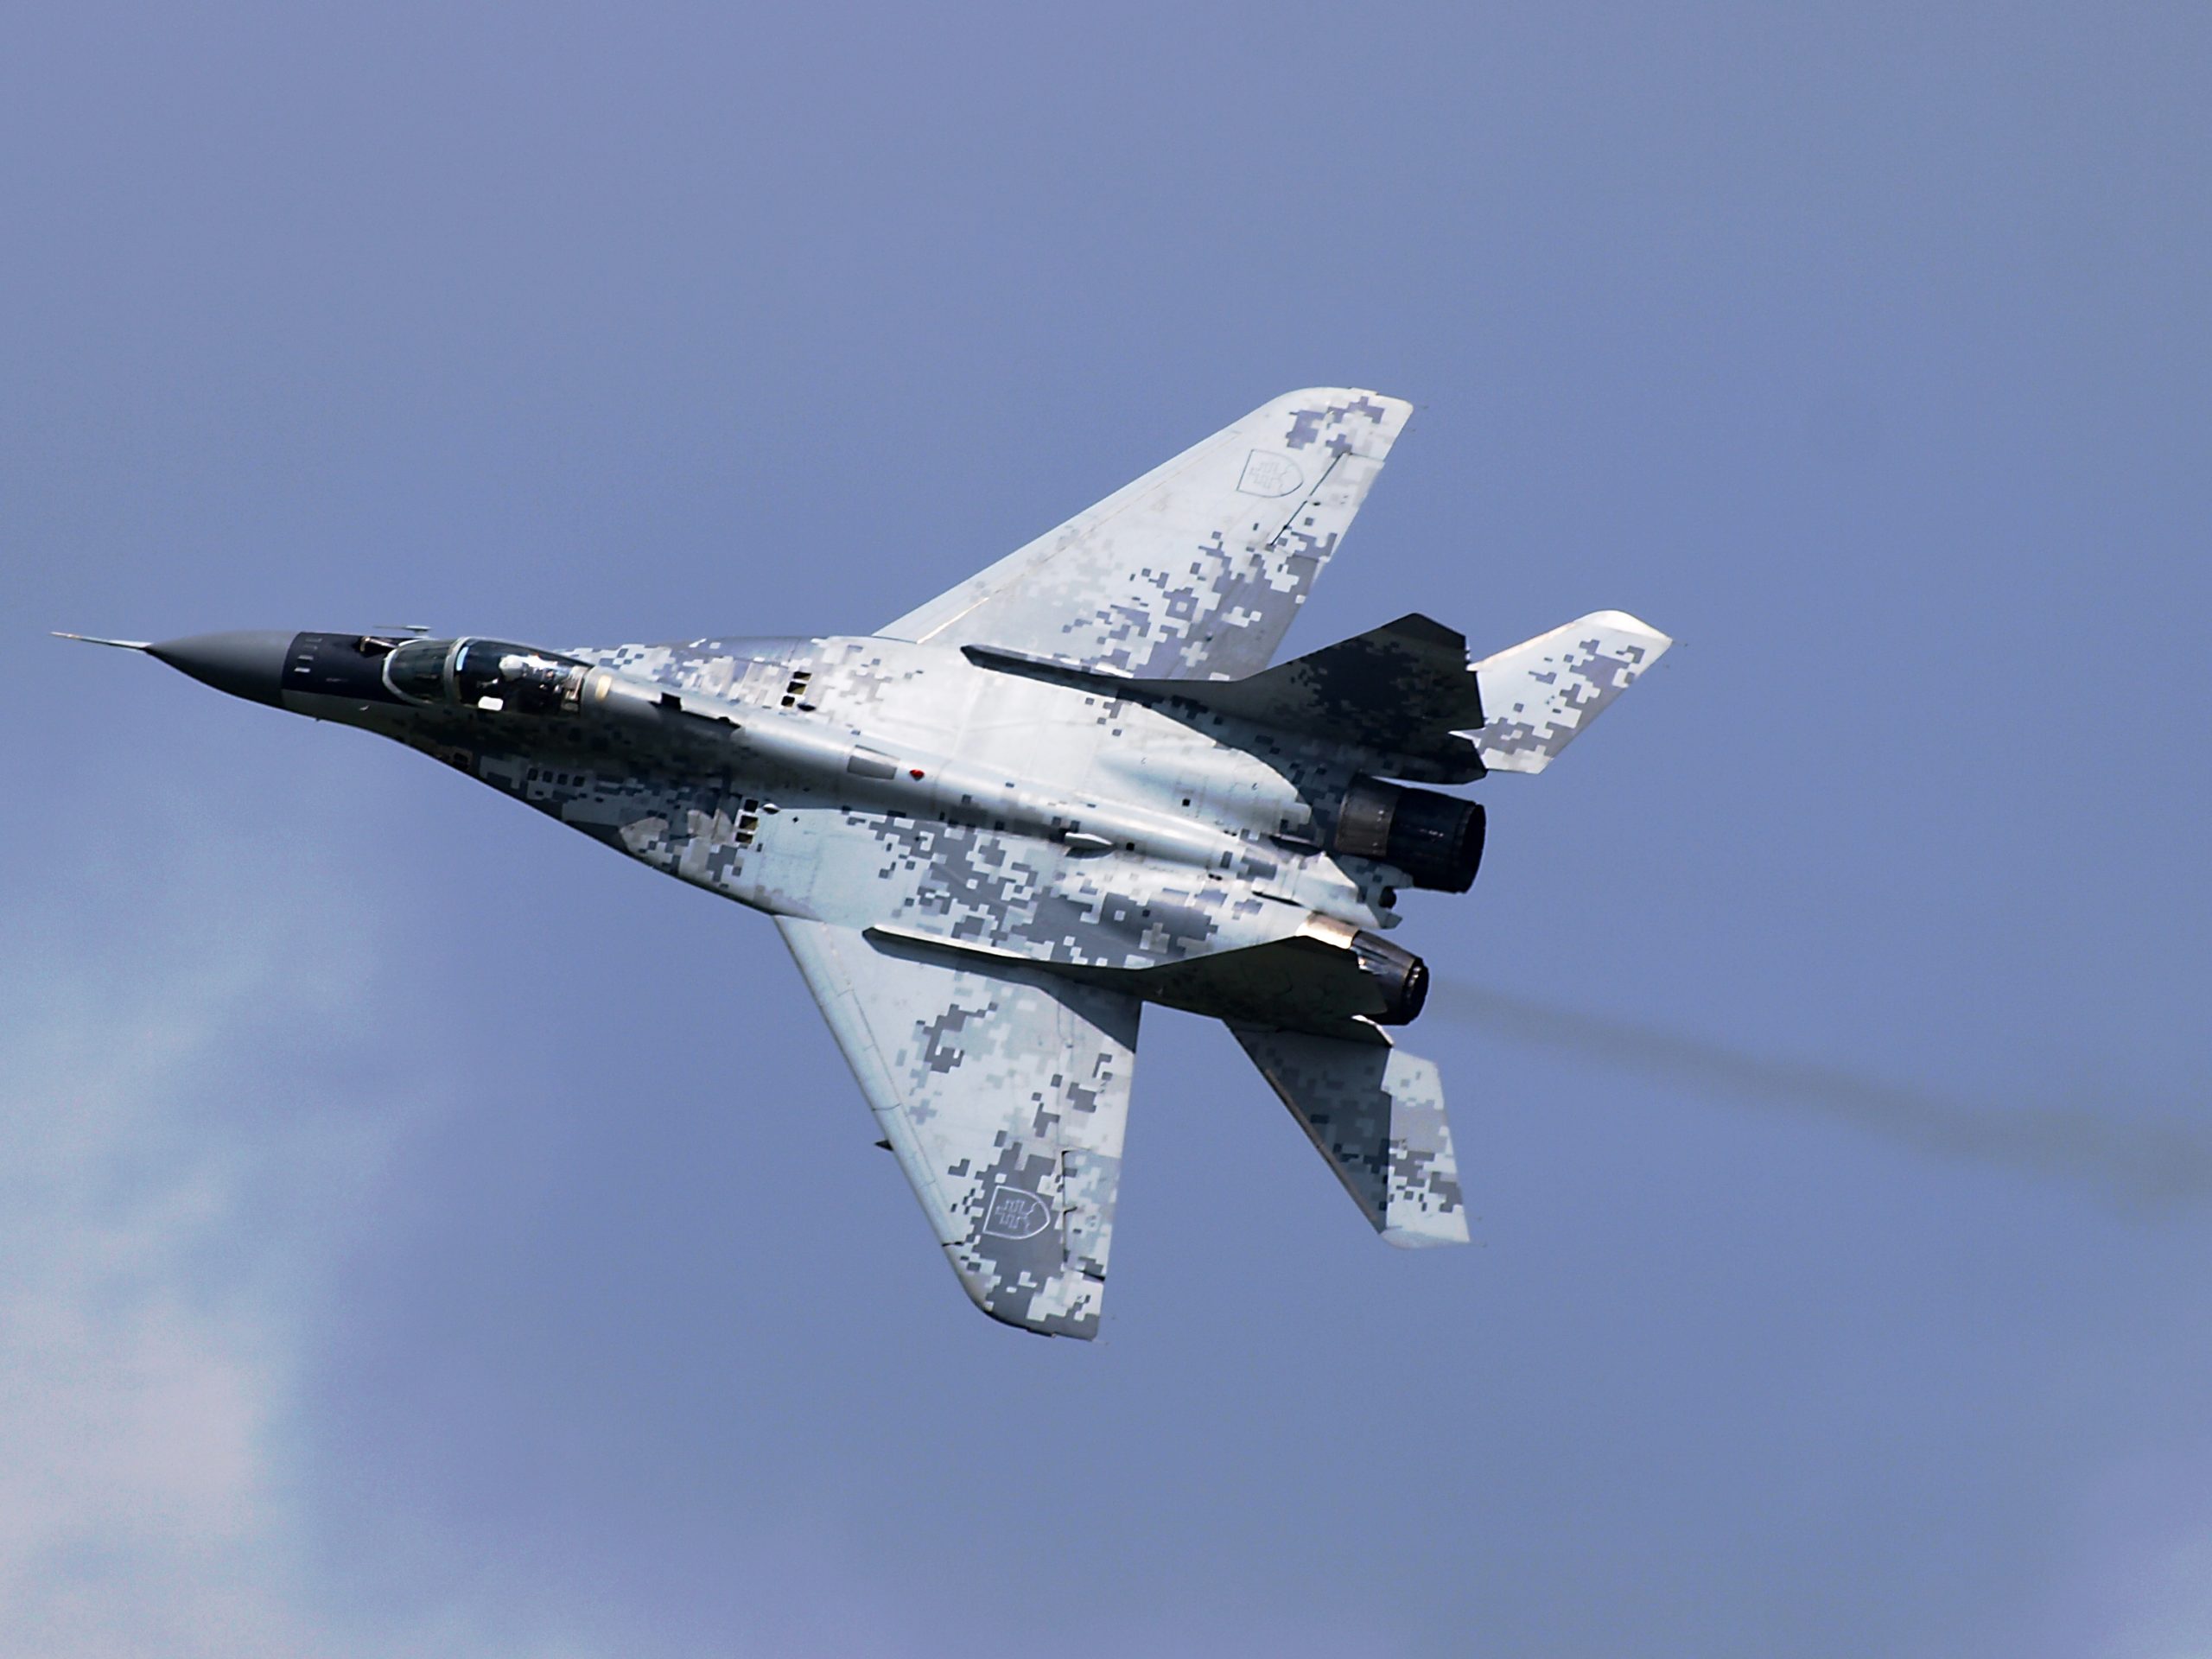 Μόσχα: Η ρωσική πολεμική αεροπορία συμμετείχε στη μάχη της Παλμύρας